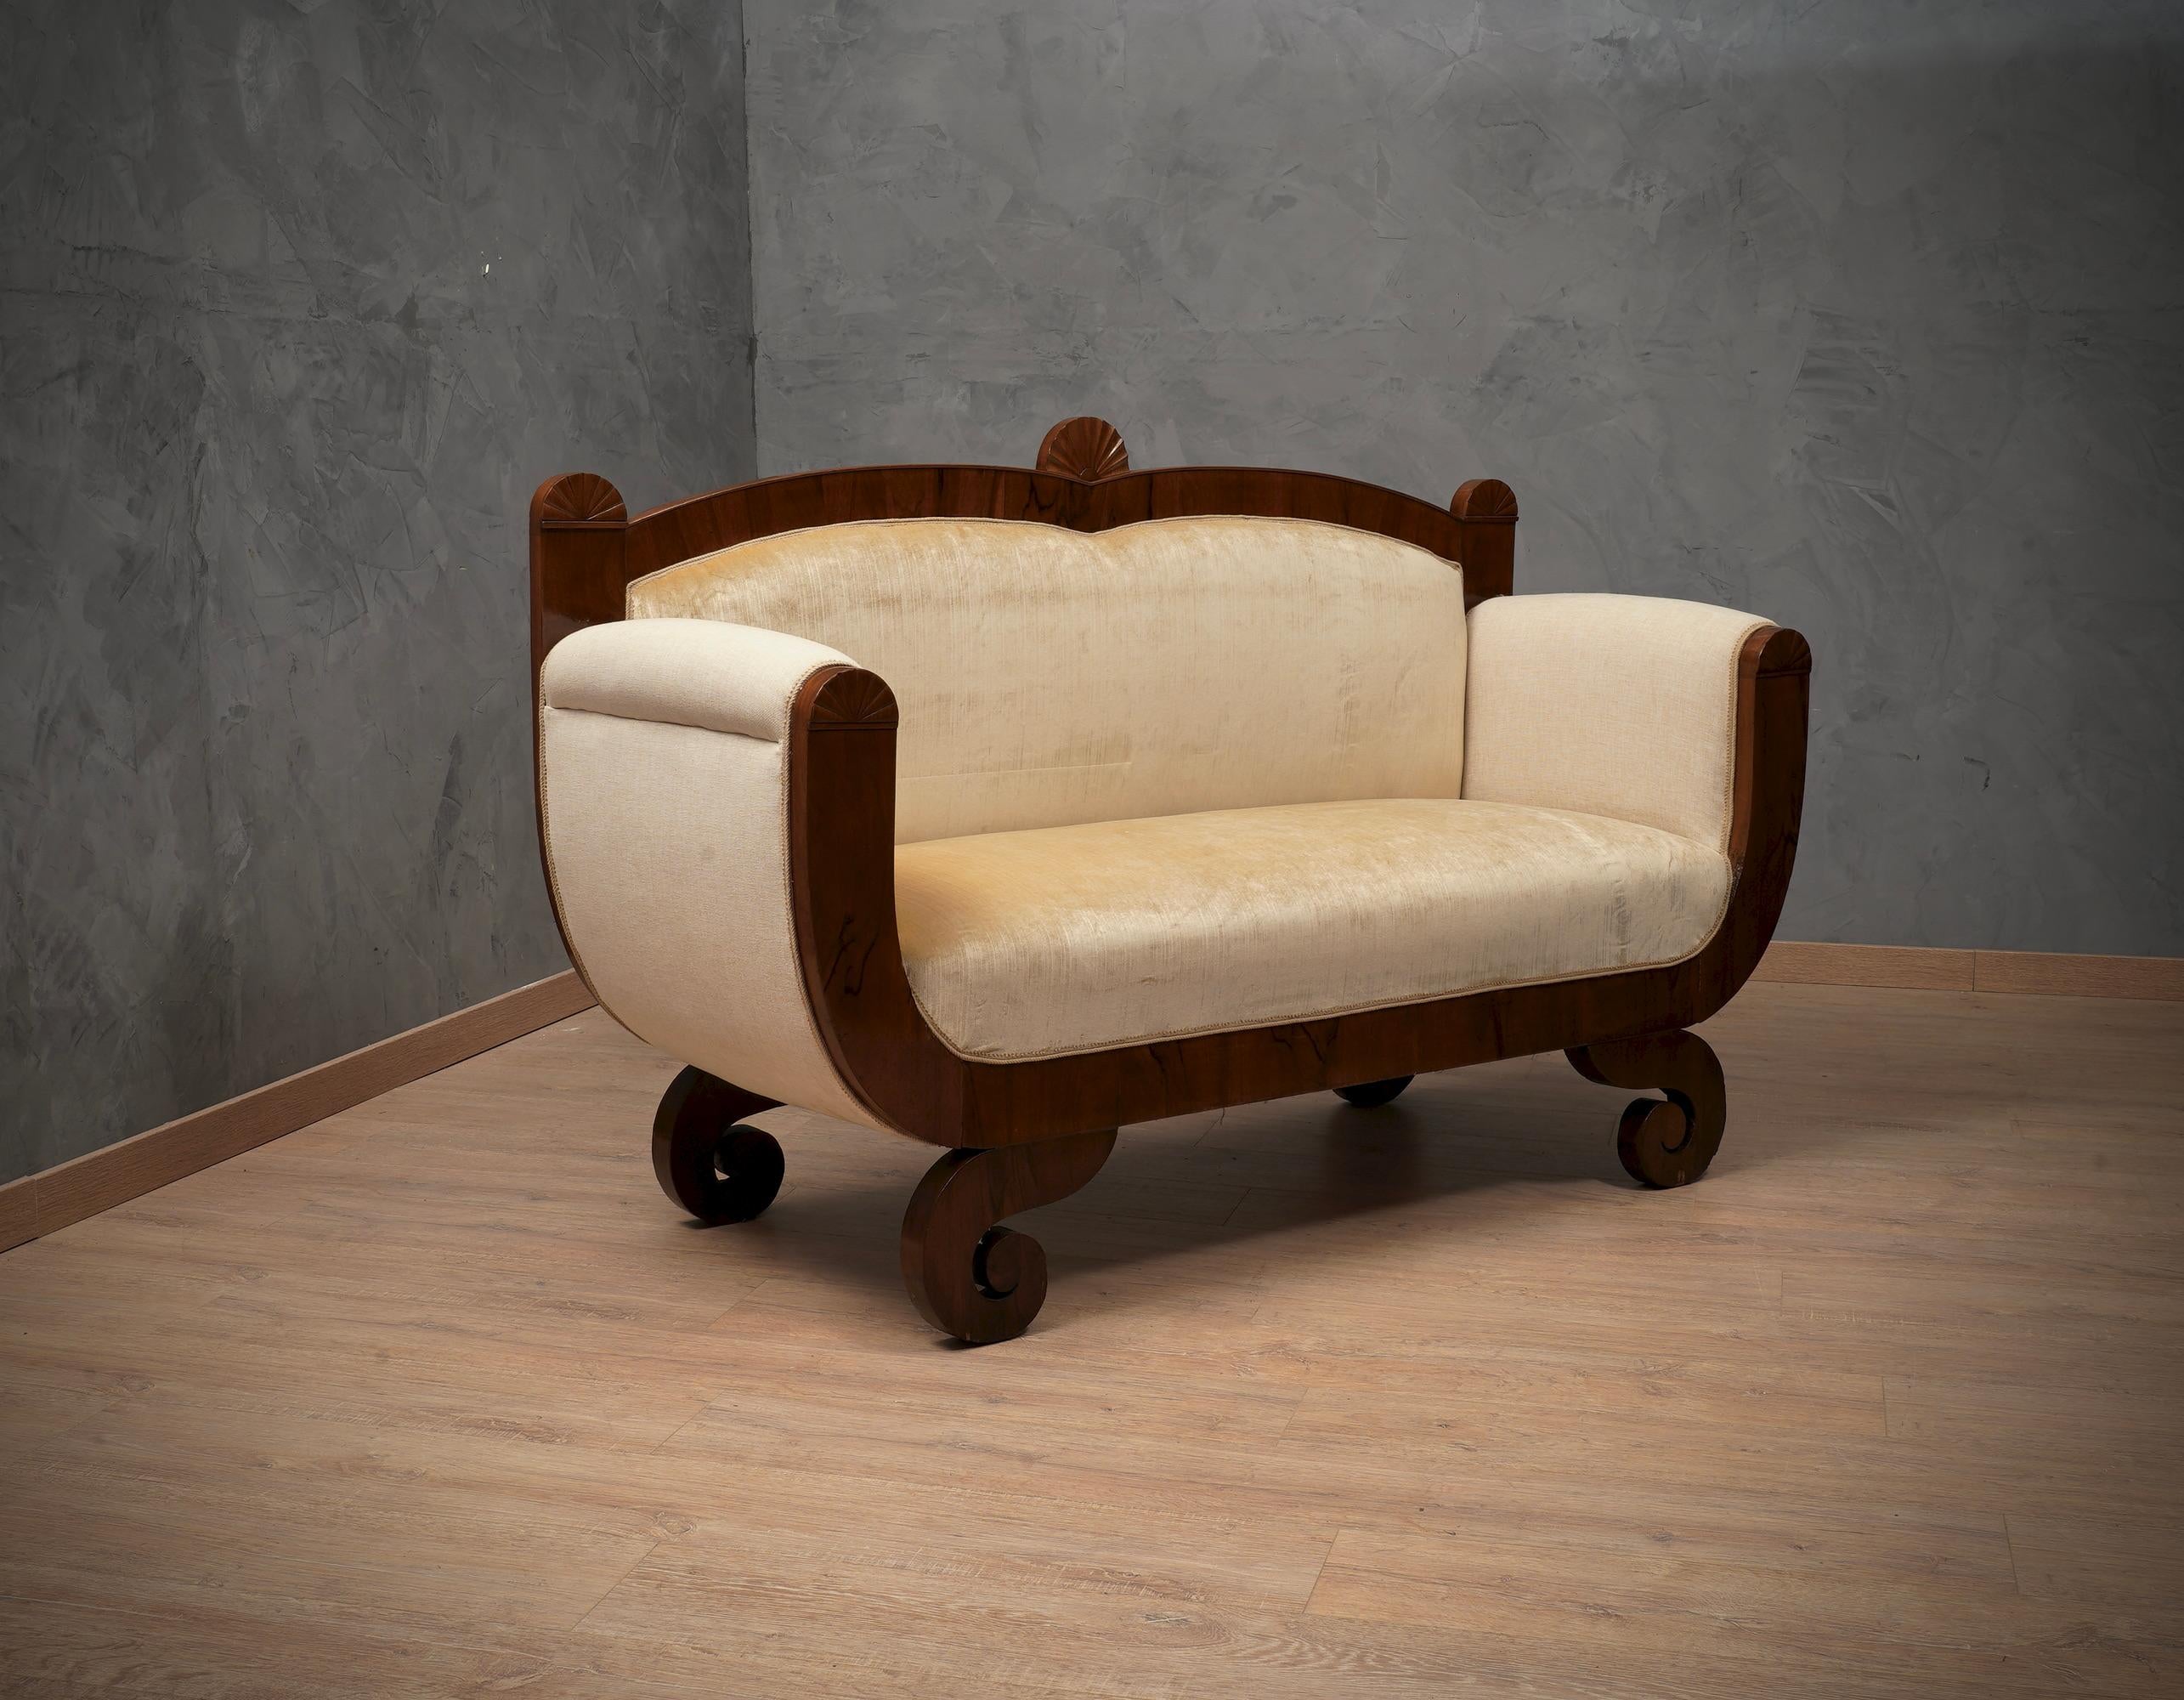 Biedermeier-Sofa mit zwei Sitzplätzen. Sofa ganz furniert in Nussbaumholz und bezogen mit beigefarbenem Samt und kombiniertem Stoff. 

Das Sofa ist klein, bietet aber zwei Personen Platz. Es besteht aus einem mit Nussbaumholz furnierten Band, das